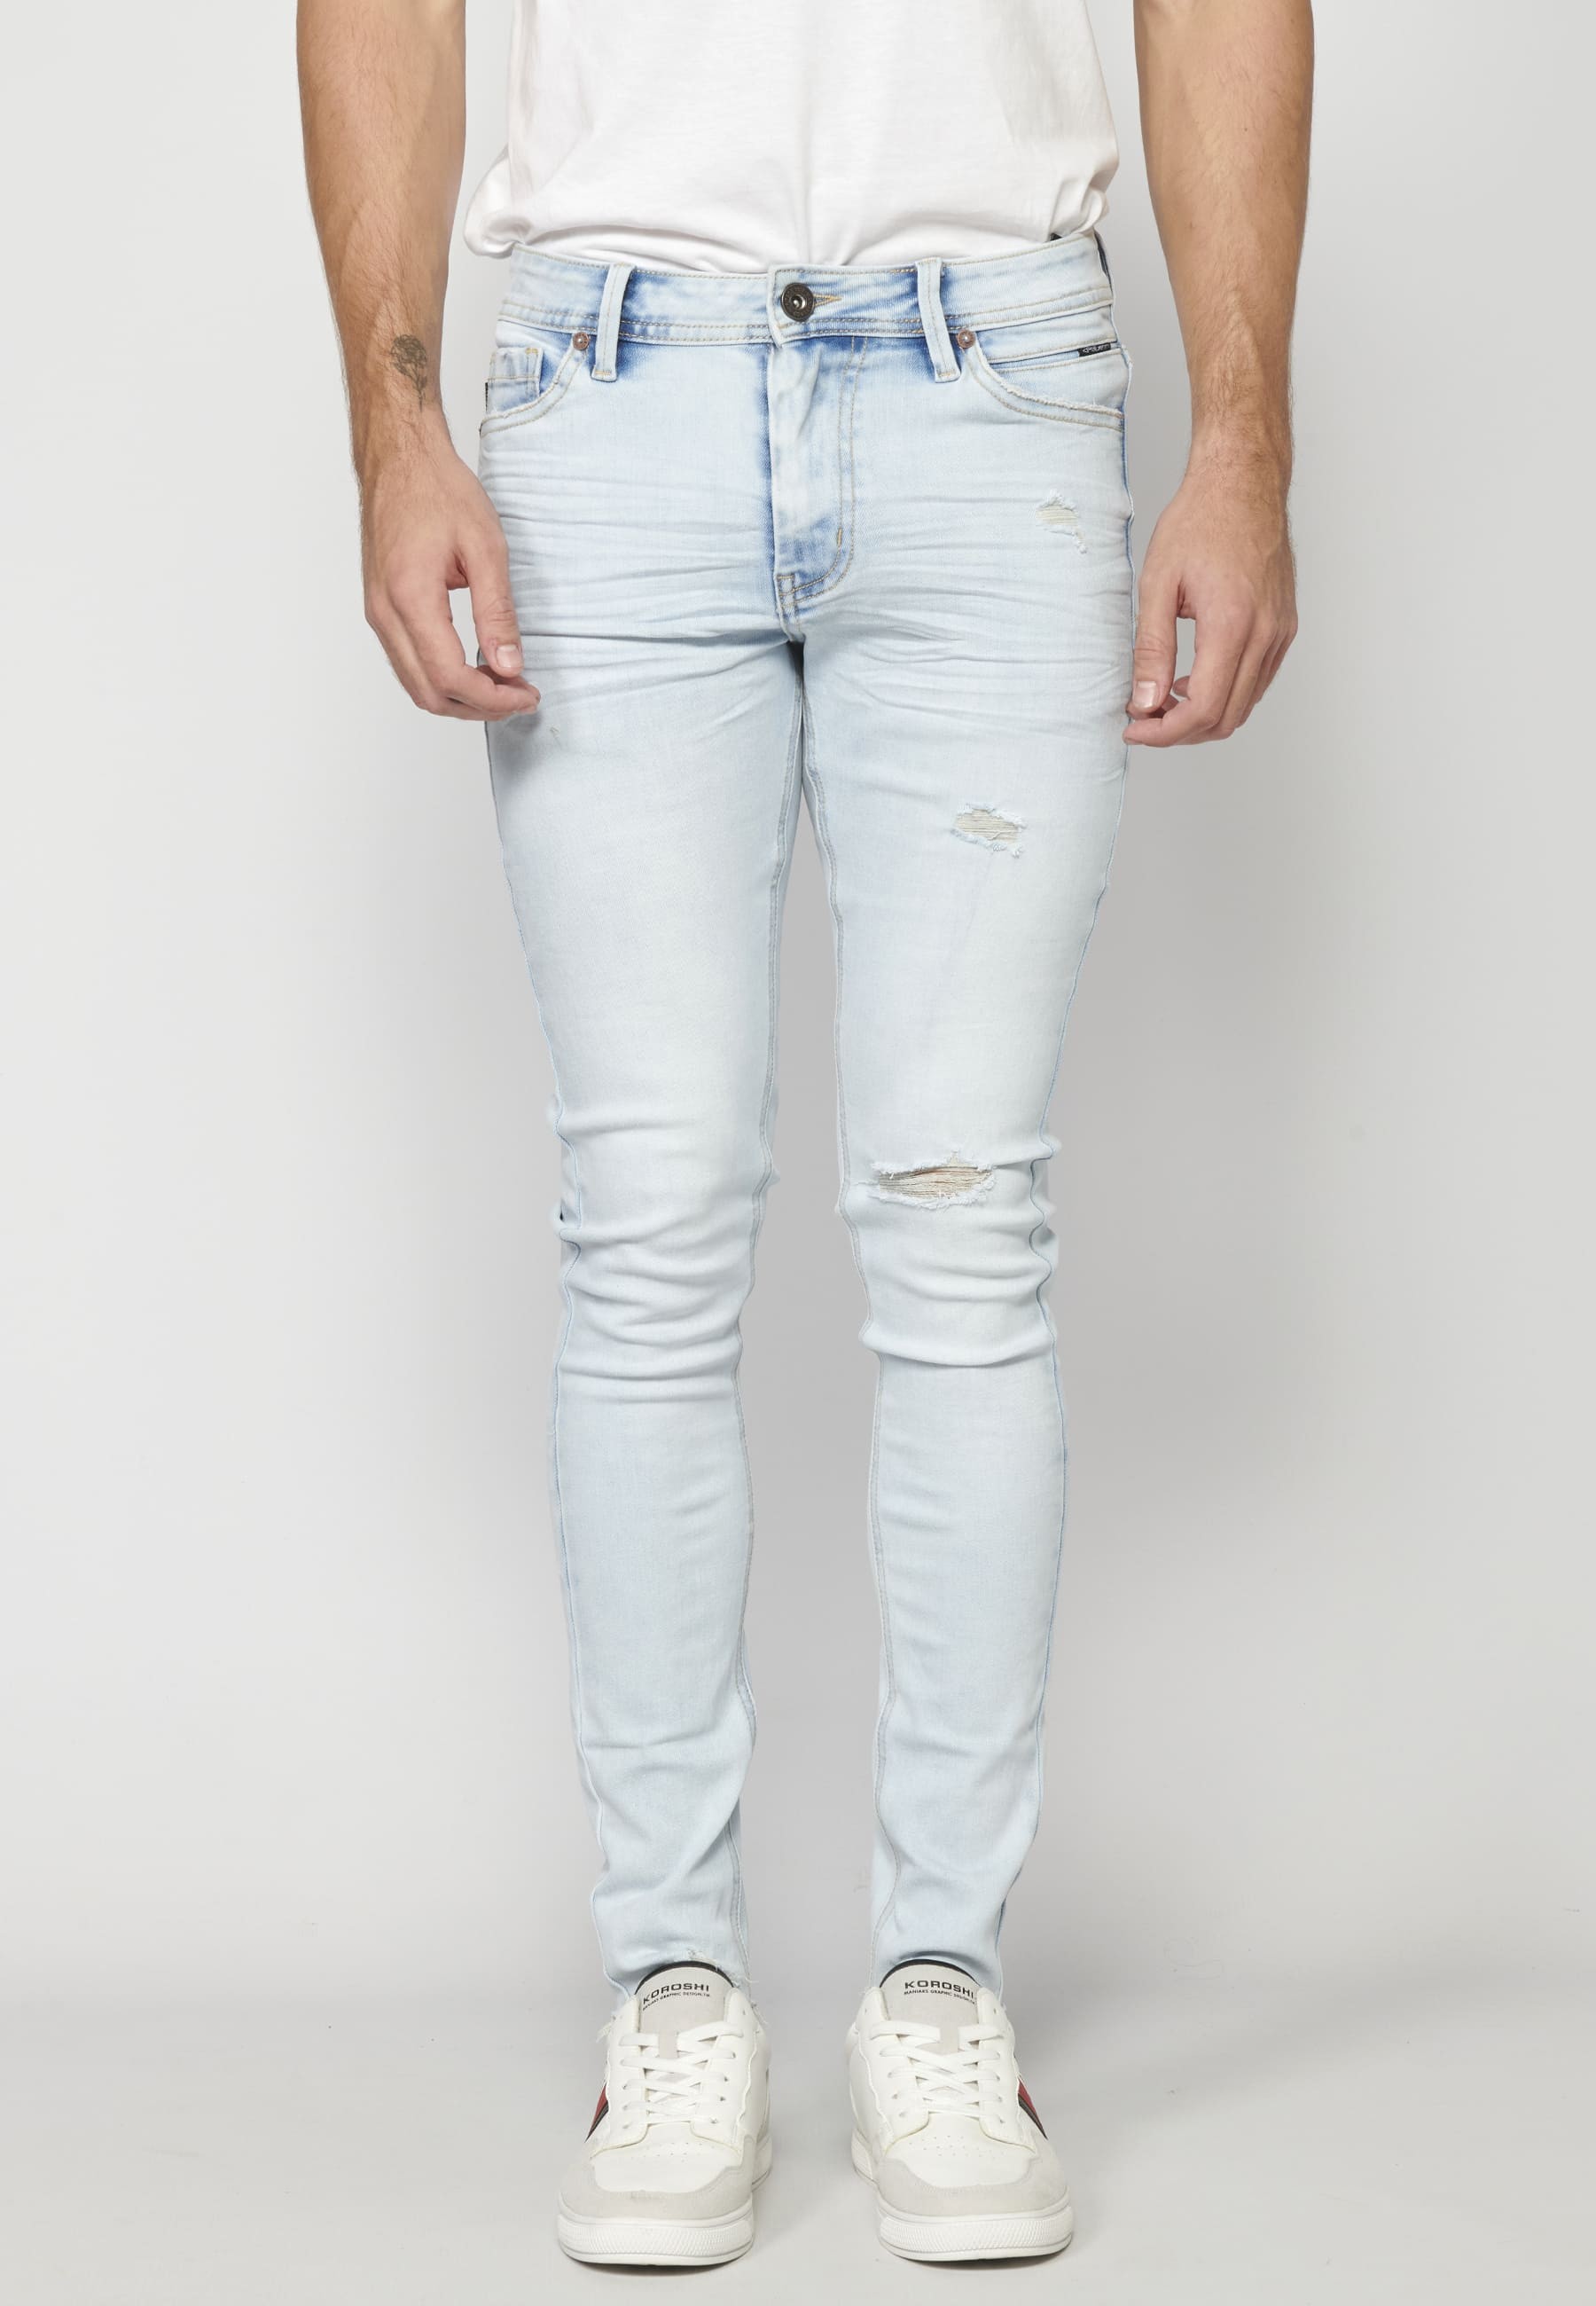 Blue super skinny jean pants for Men